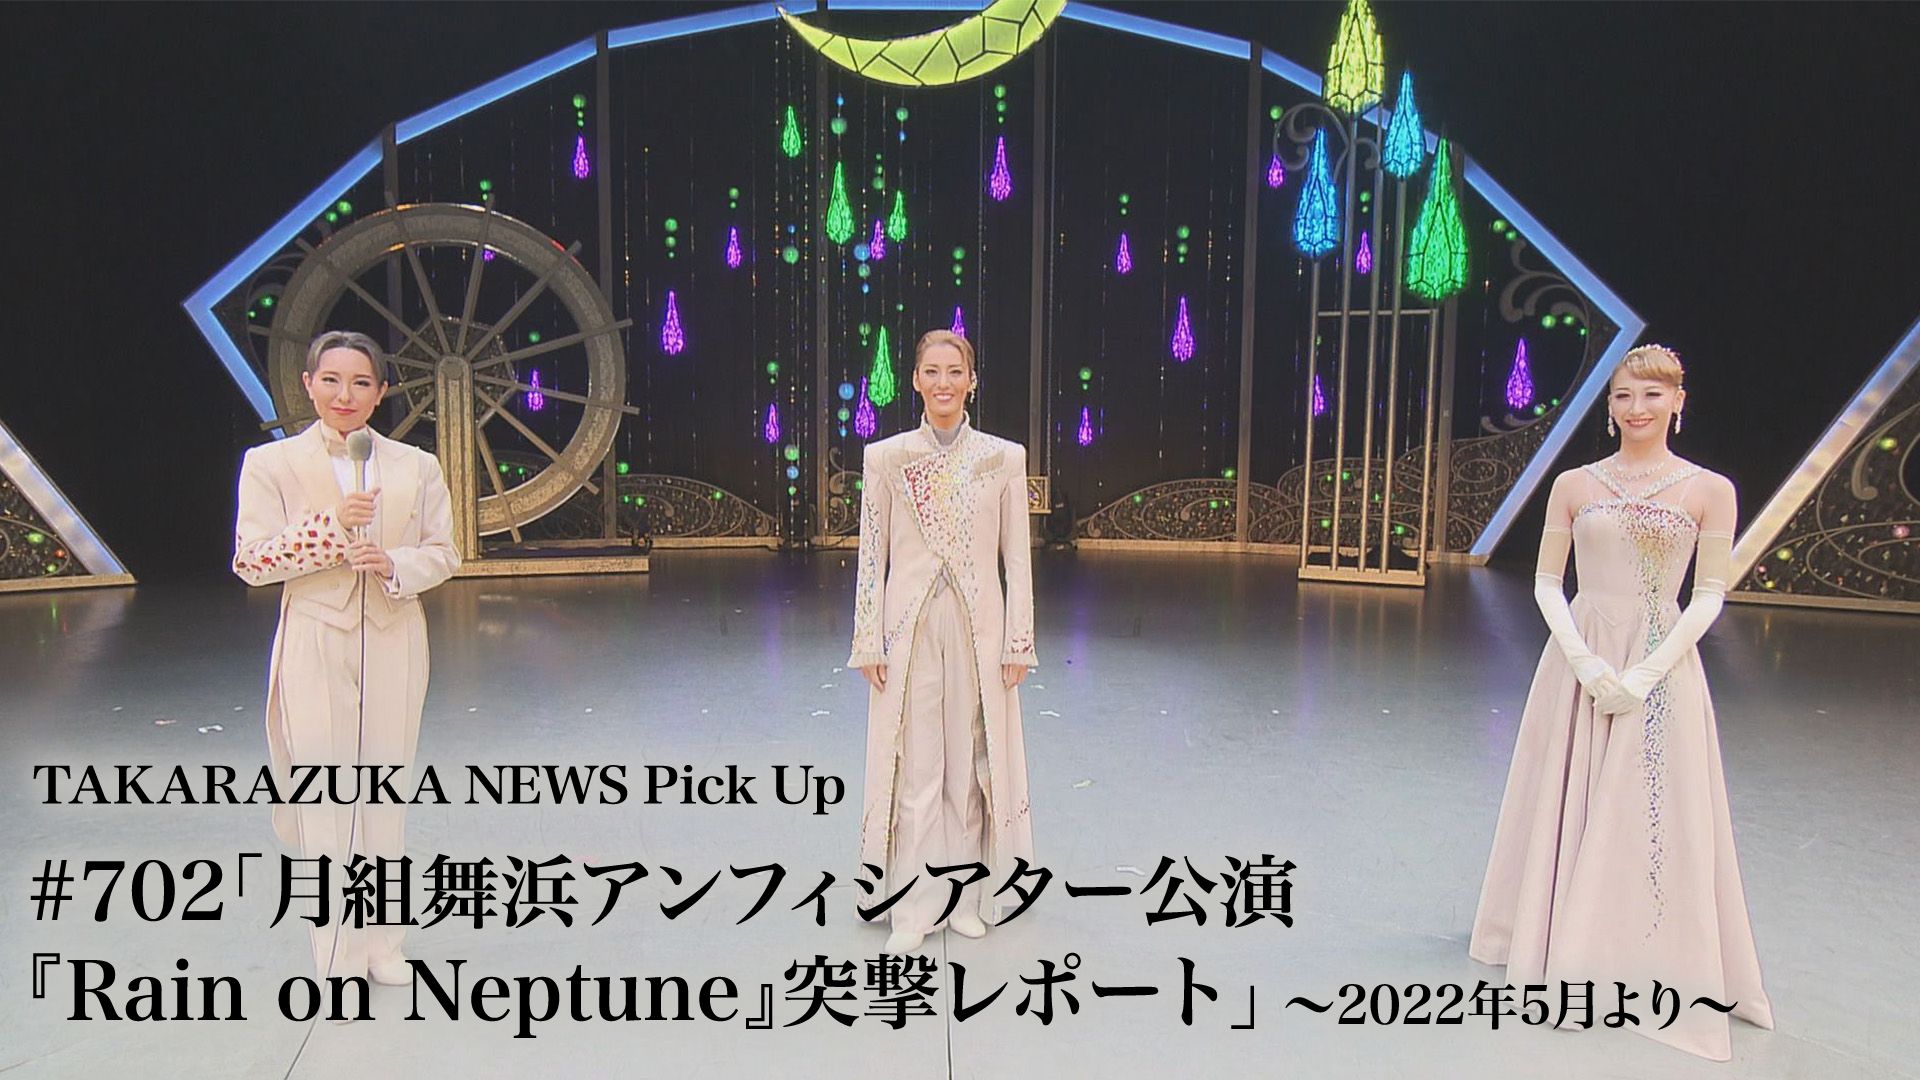 TAKARAZUKA NEWS Pick Up #702「月組舞浜アンフィシアター公演『Rain on Neptune』突撃レポート」〜2022年5月より〜